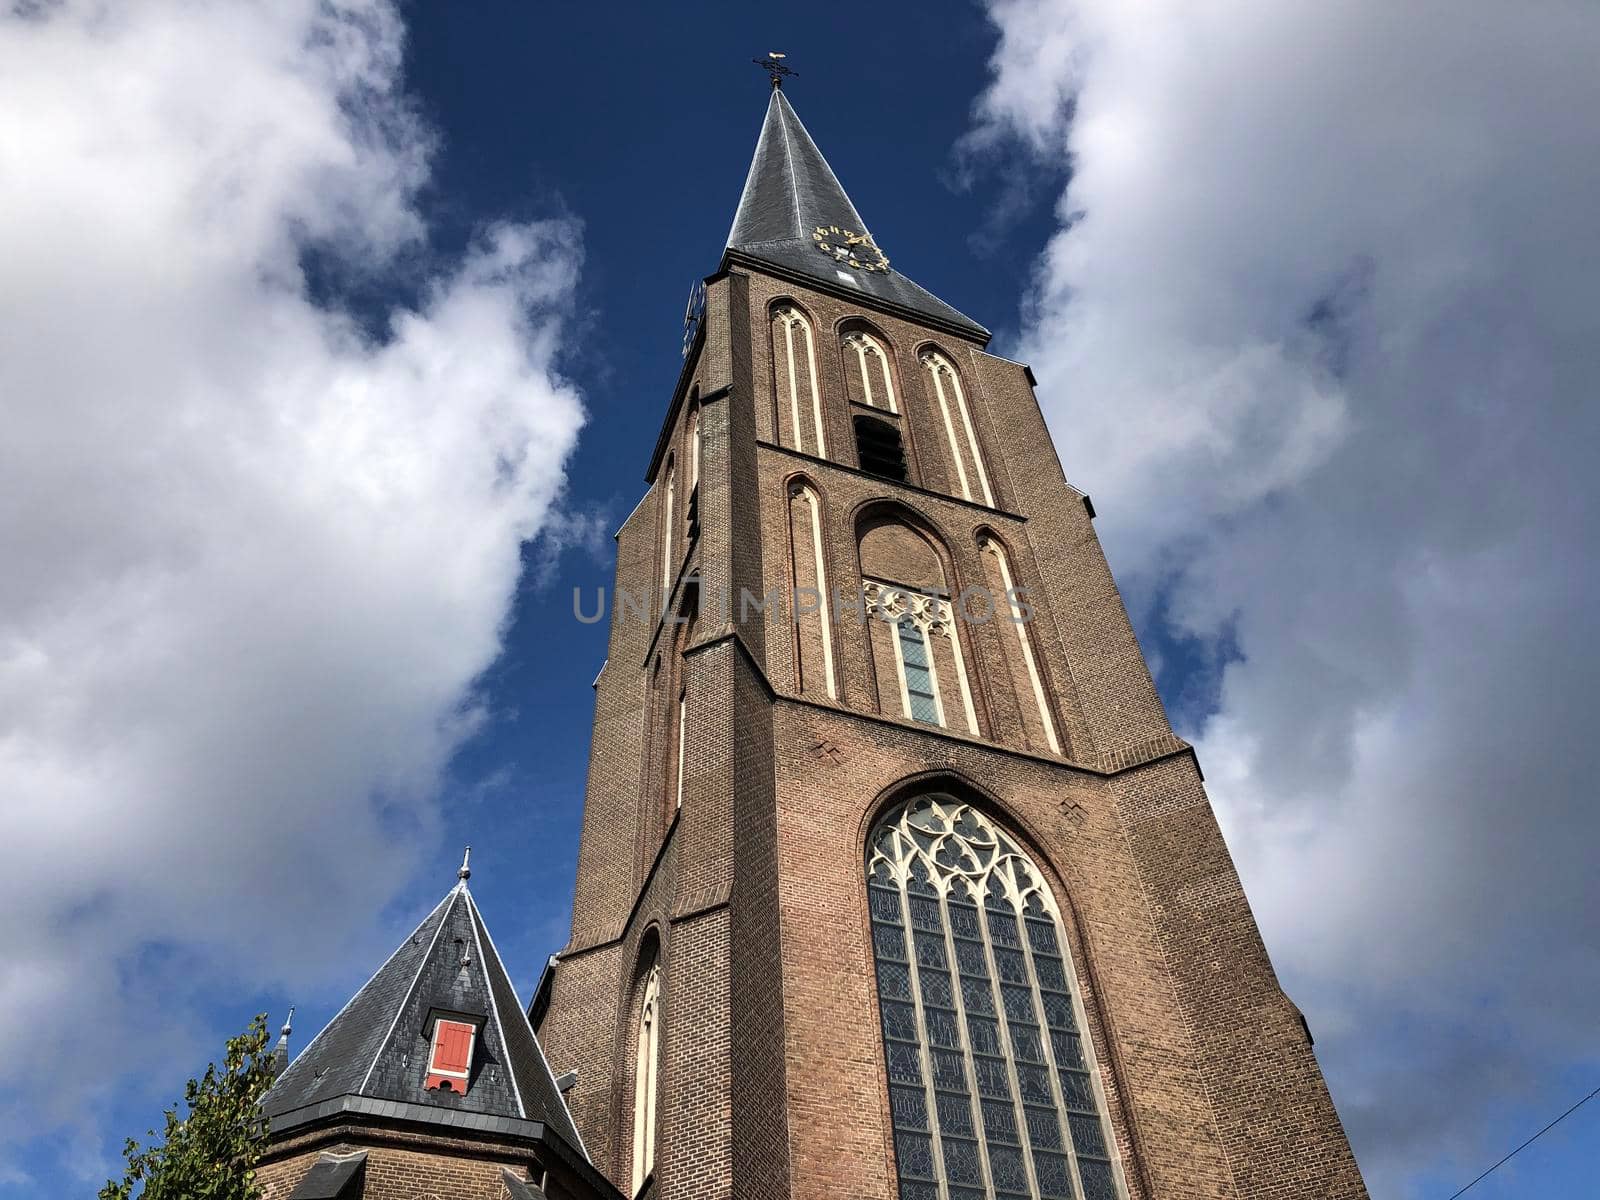 St. Martinus church in Arnhem by traveltelly